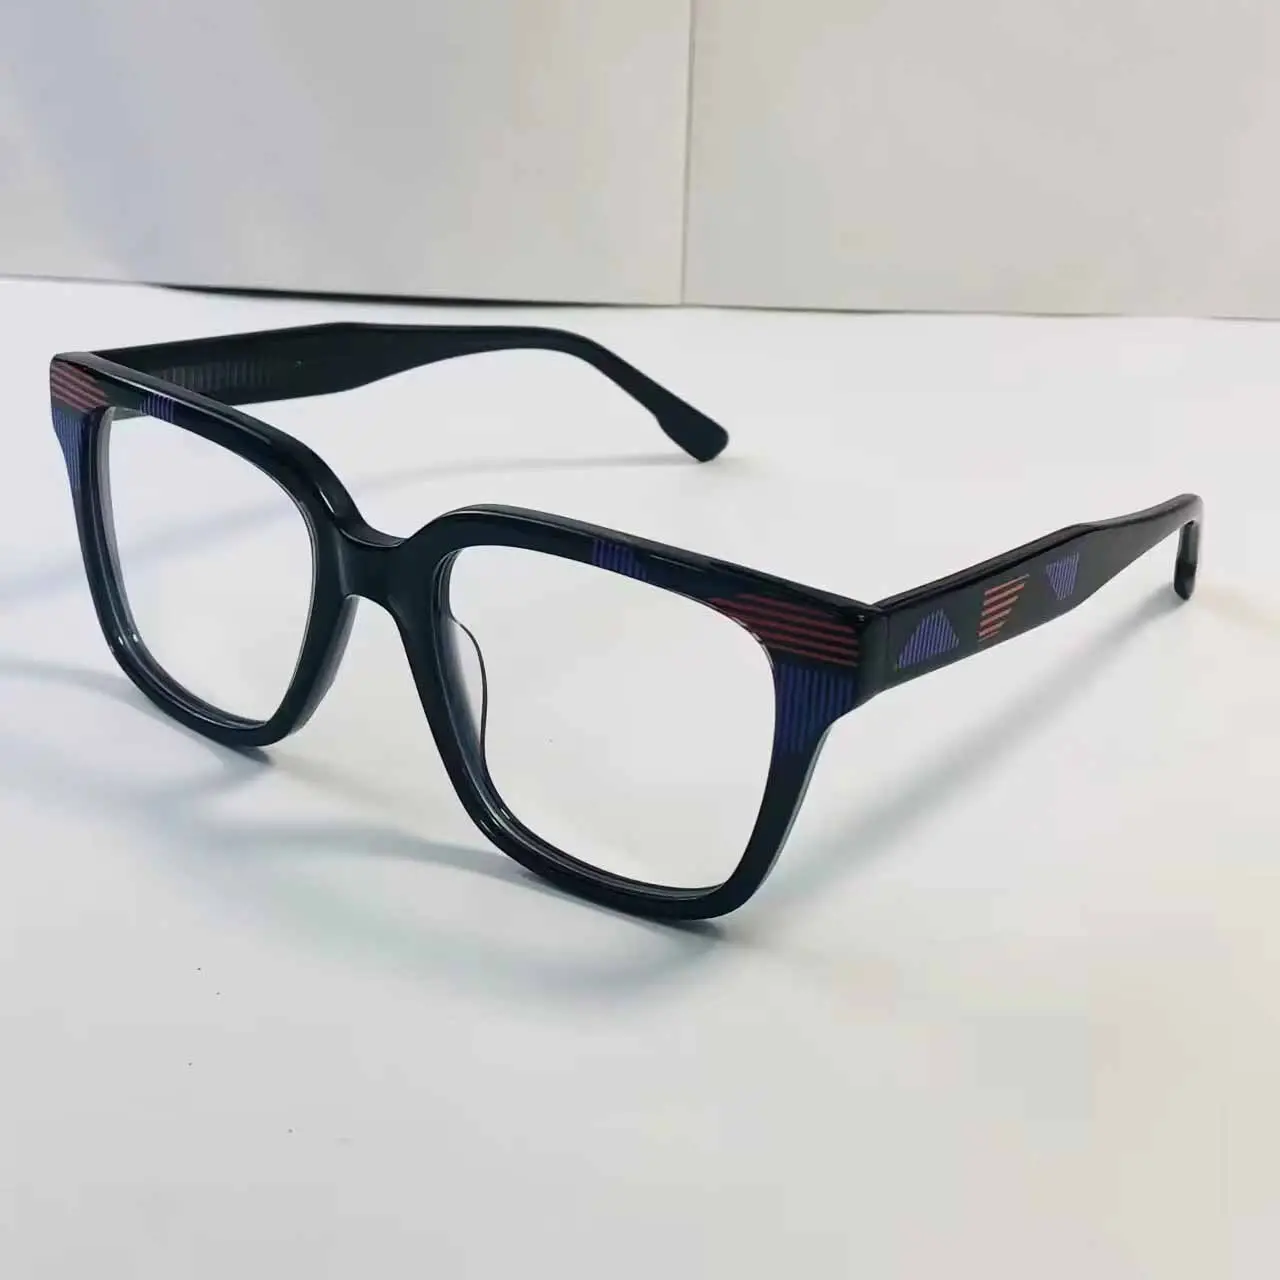 Venta al por mayor logotipo personalizado gafas ópticas miopía protección dioptrías gafas graduadas marcos para gafas acetato